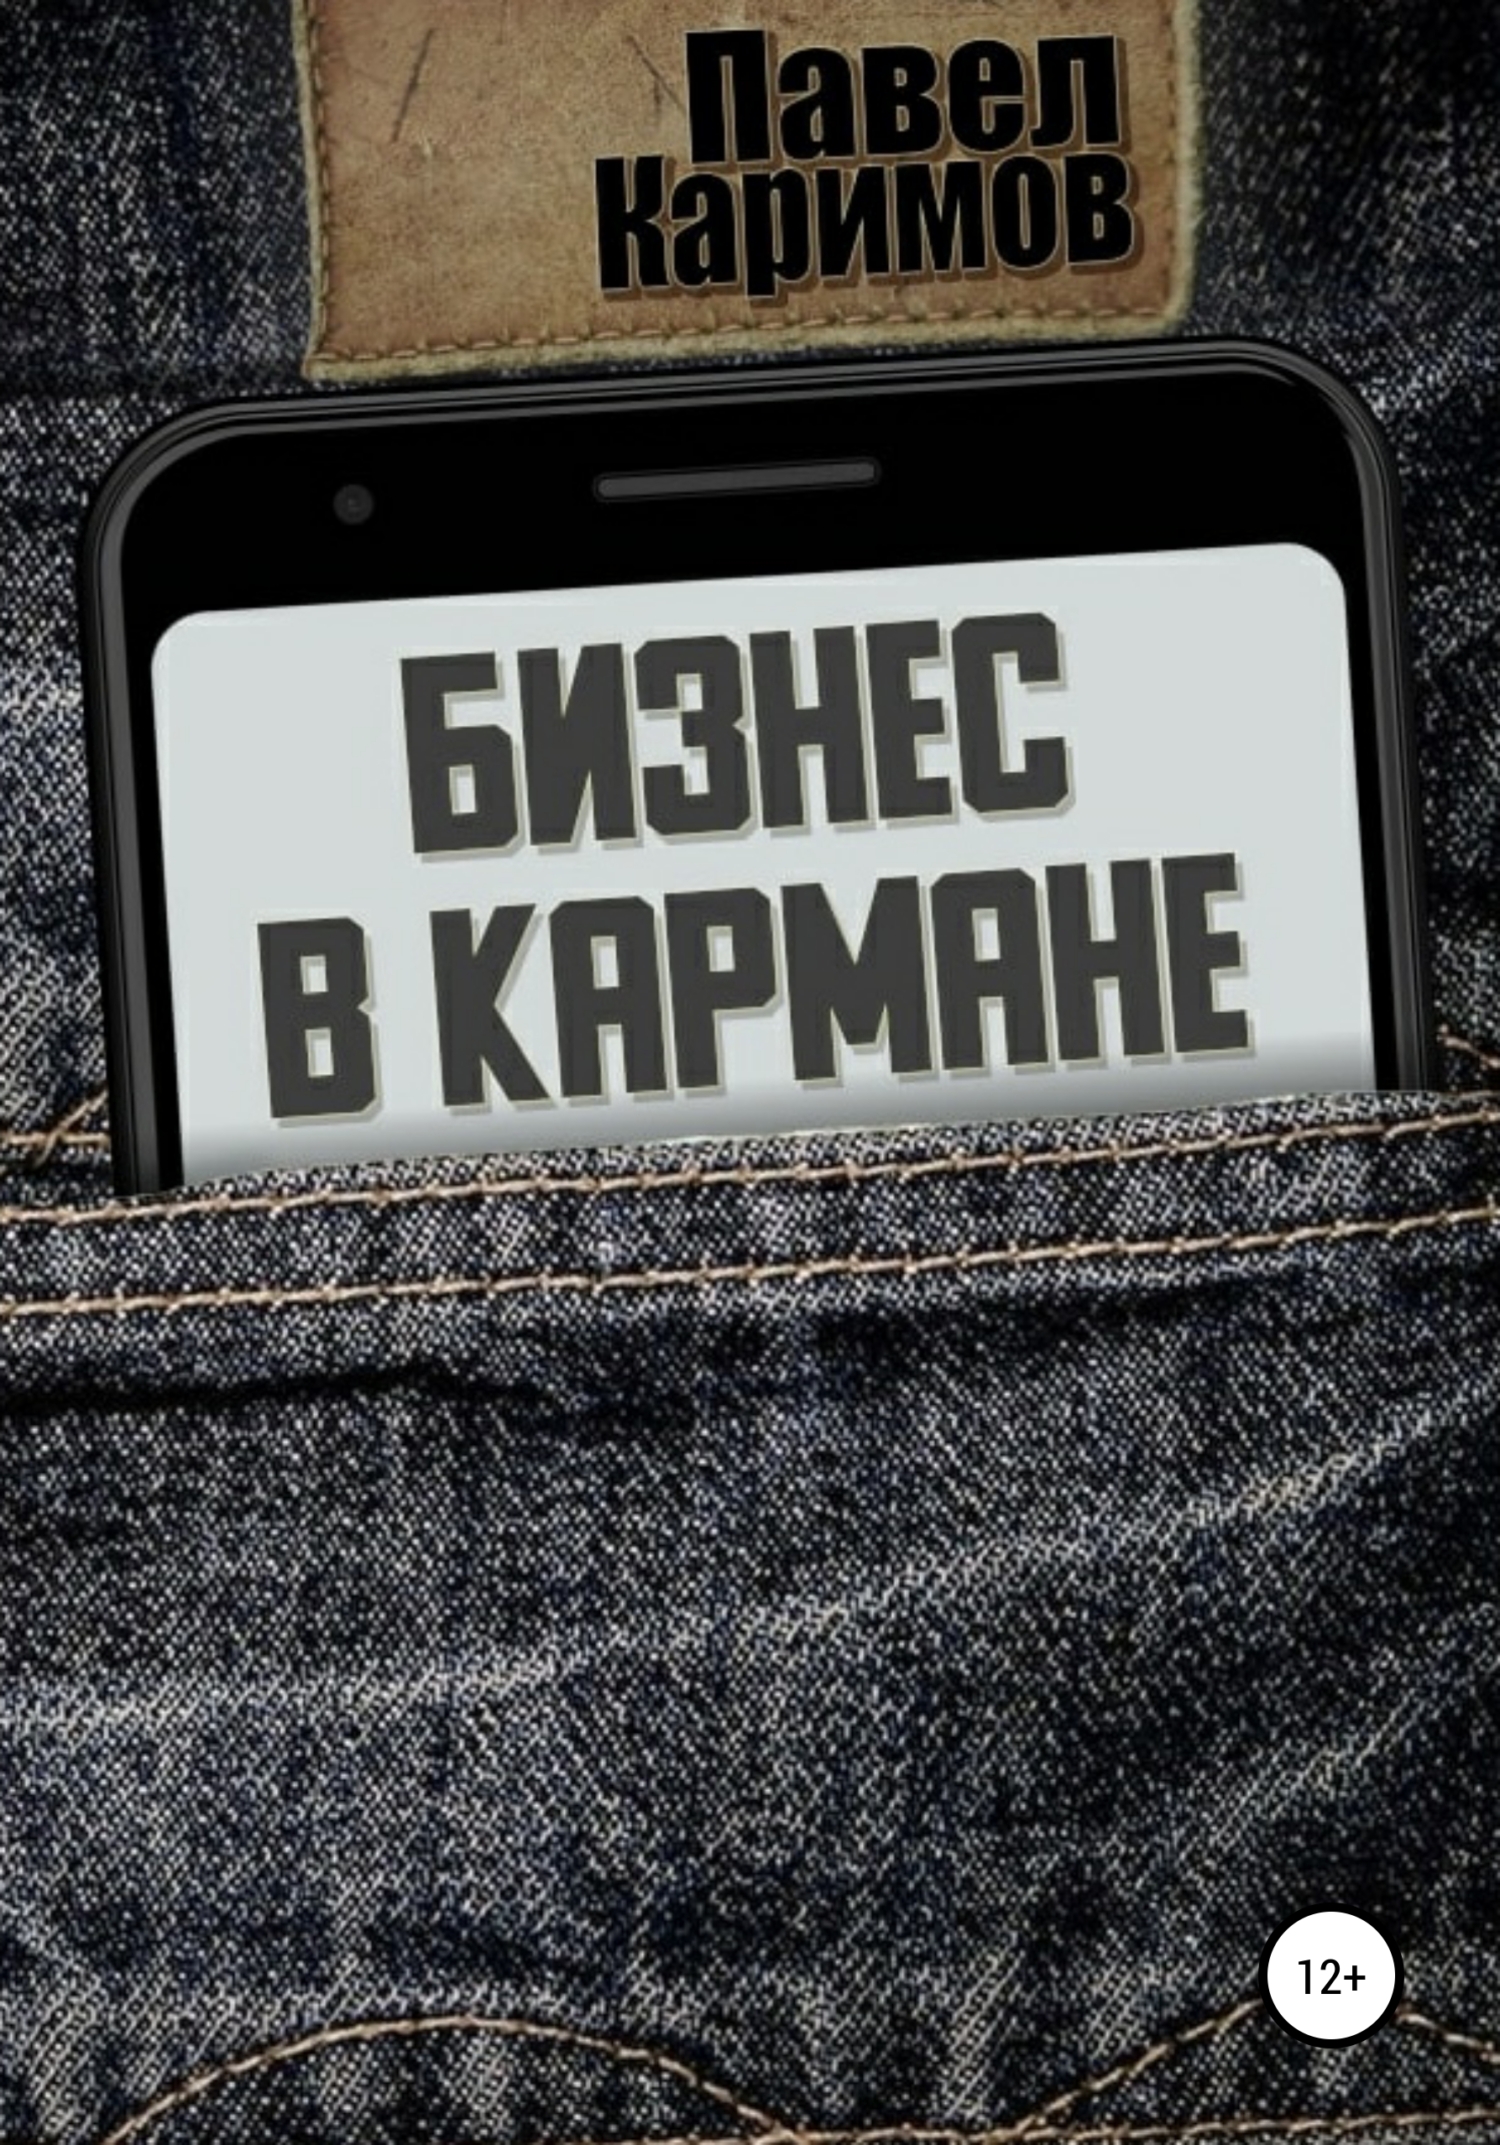 Книга  Бизнес в кармане созданная Павел Магсумович Каримов может относится к жанру бизнес-план, бизнес-стратегии, просто о бизнесе. Стоимость электронной книги Бизнес в кармане с идентификатором 64353216 составляет 49.90 руб.